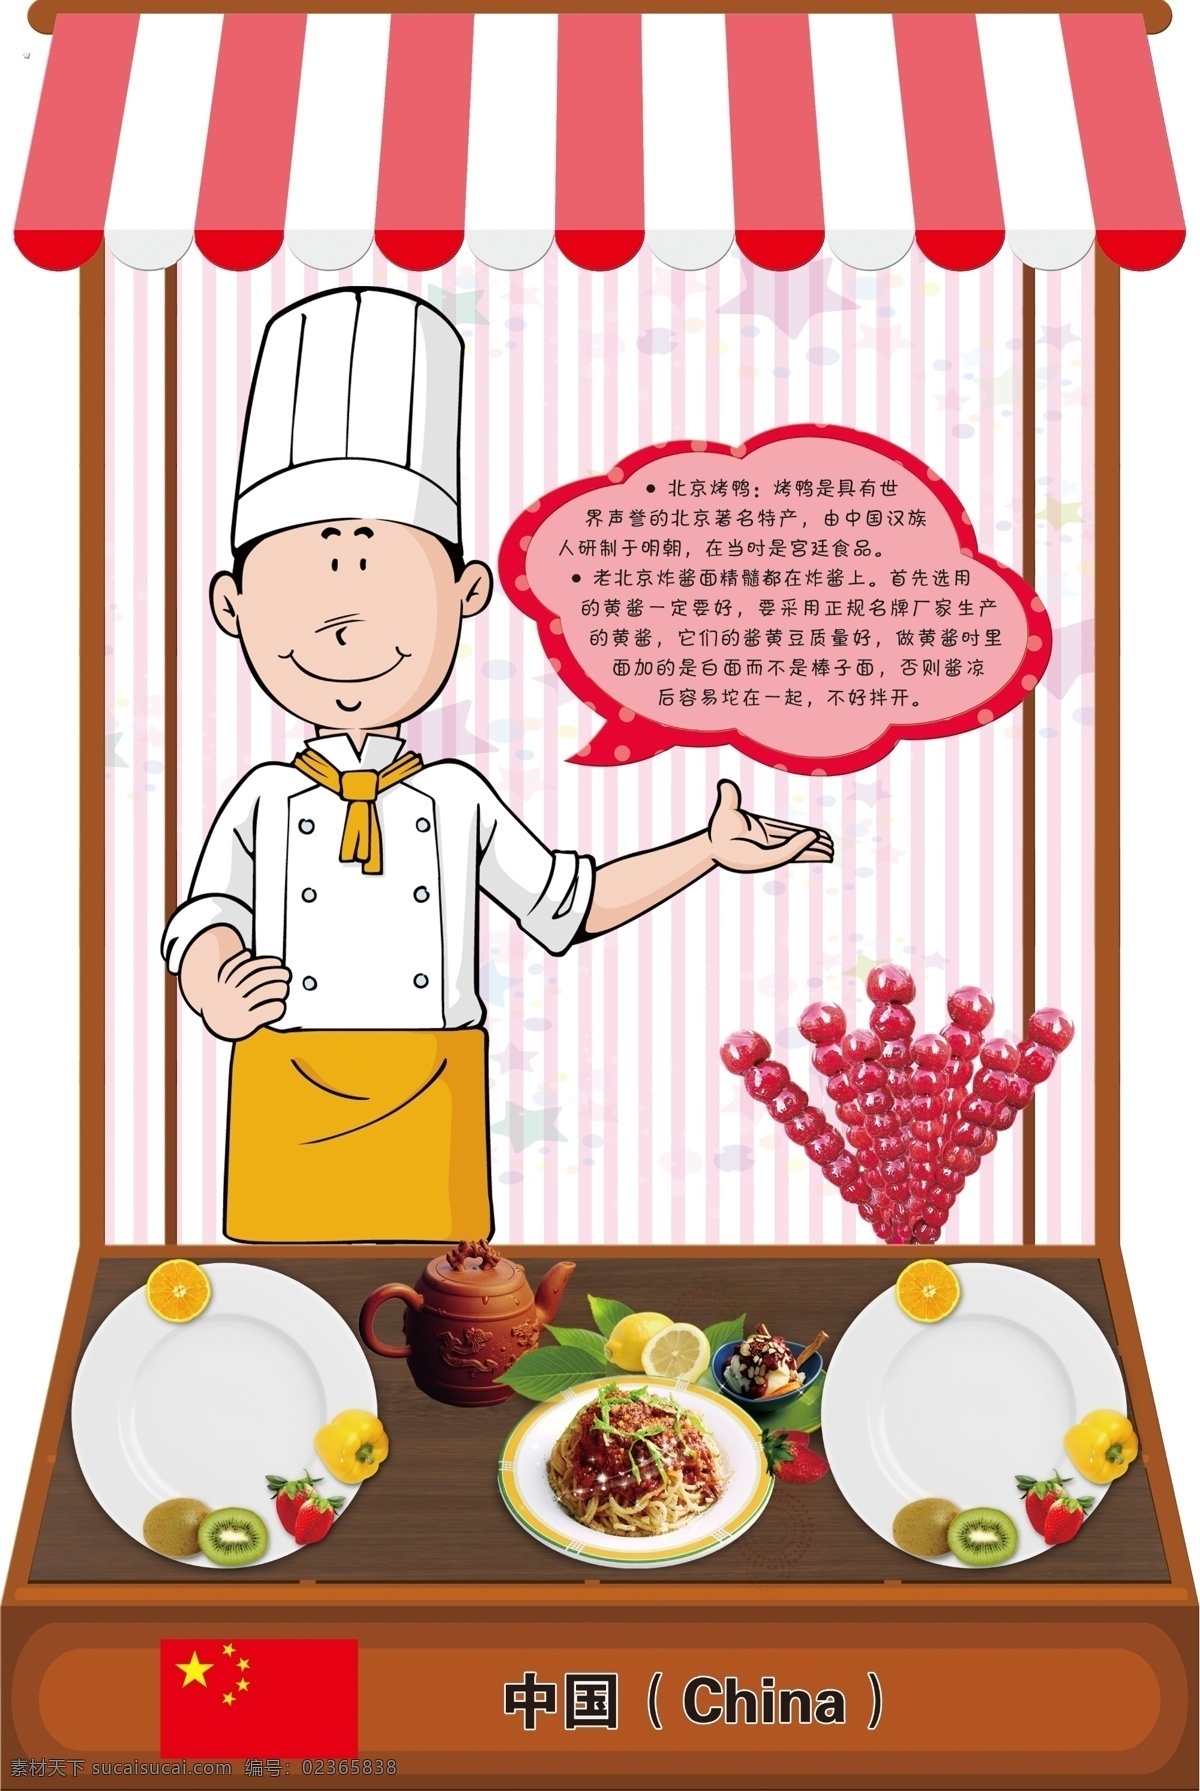 厨师小摊中国 中国特色小吃 幼儿园文化 舌尖上的中国 糖葫芦 炸酱面 白色